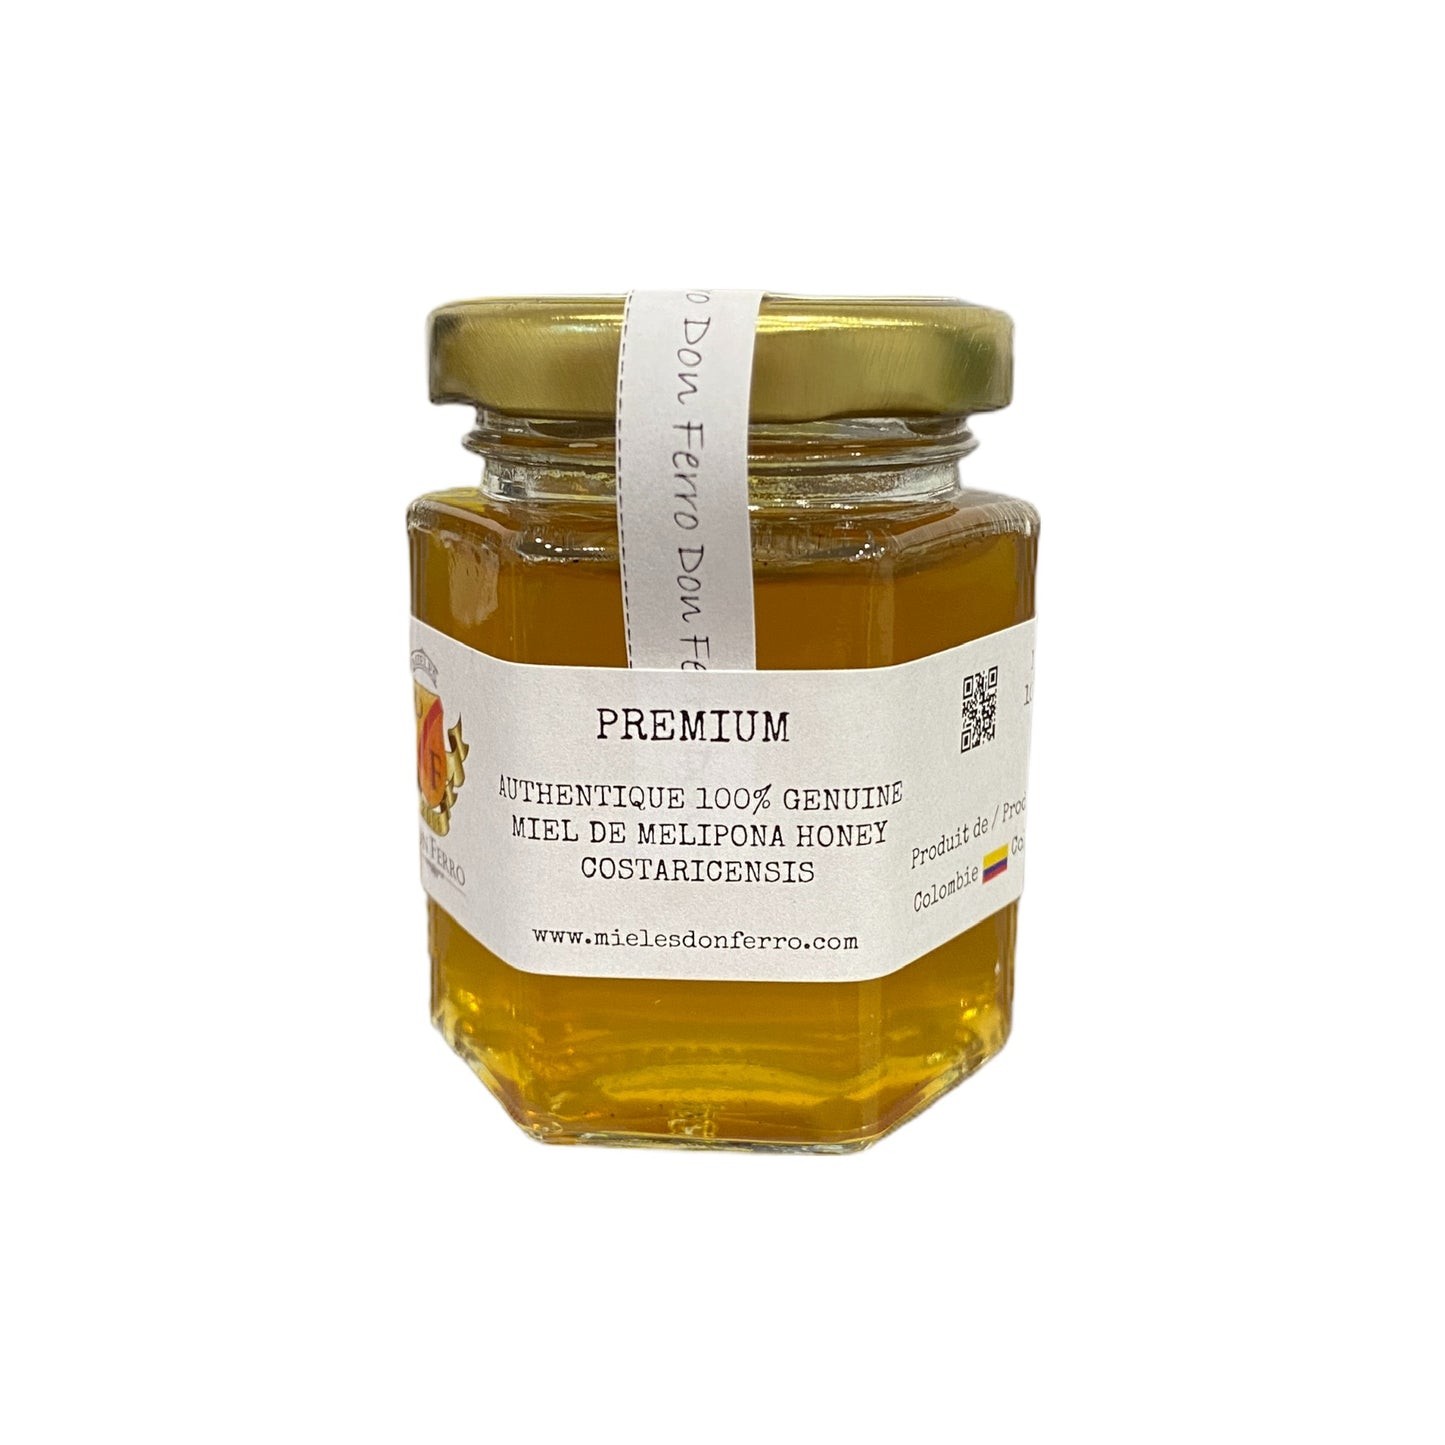 Melipona Honeys from Mieles Don Ferro